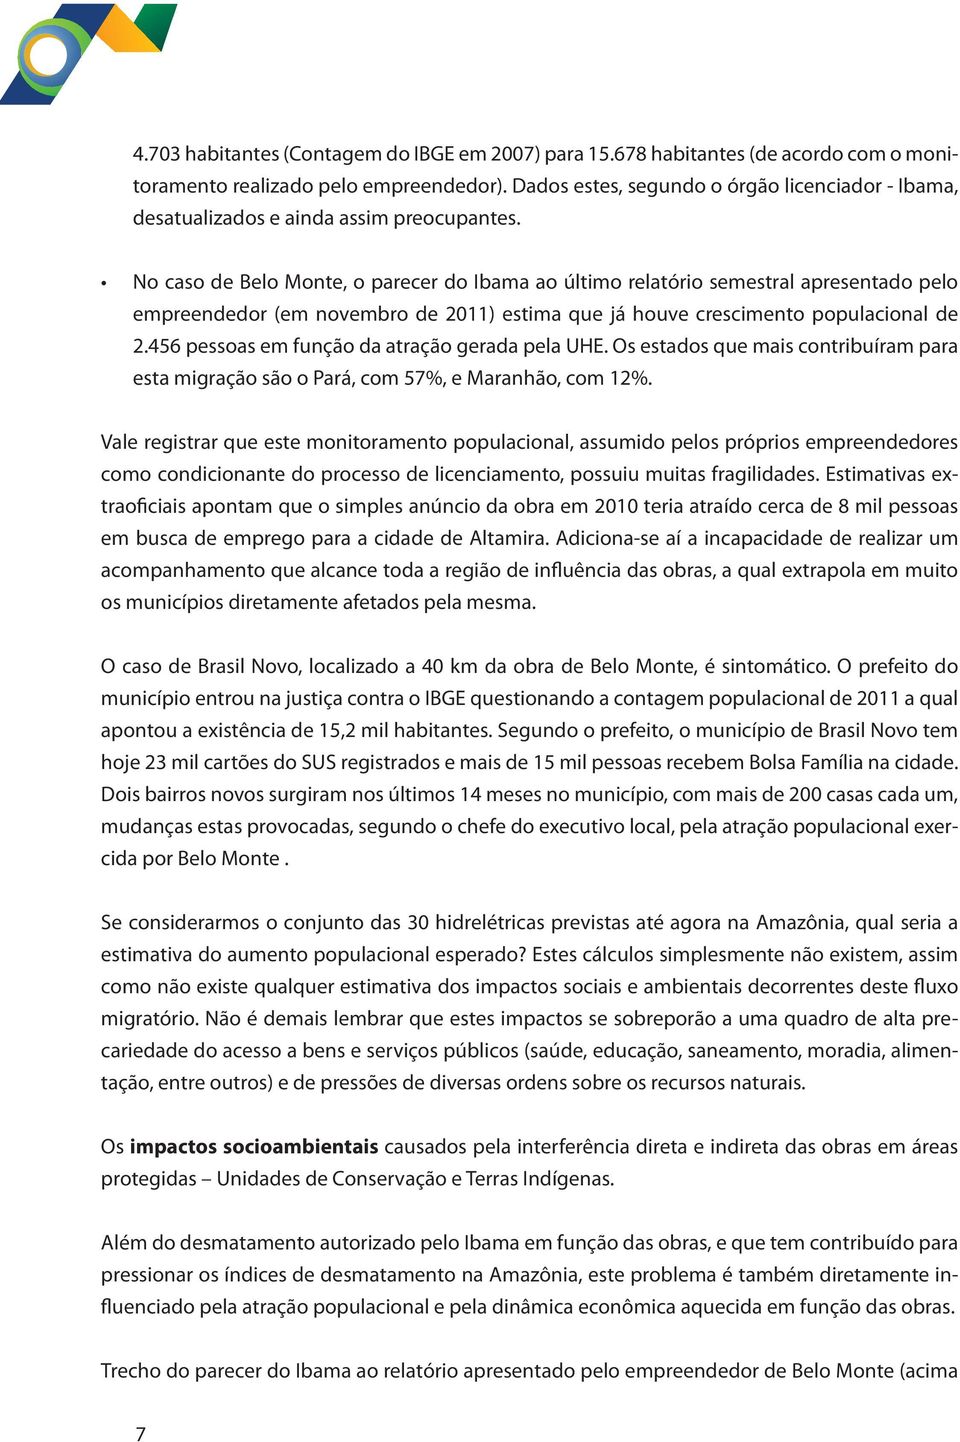 No caso de Belo Monte, o parecer do Ibama ao último relatório semestral apresentado pelo empreendedor (em novembro de 2011) estima que já houve crescimento populacional de 2.